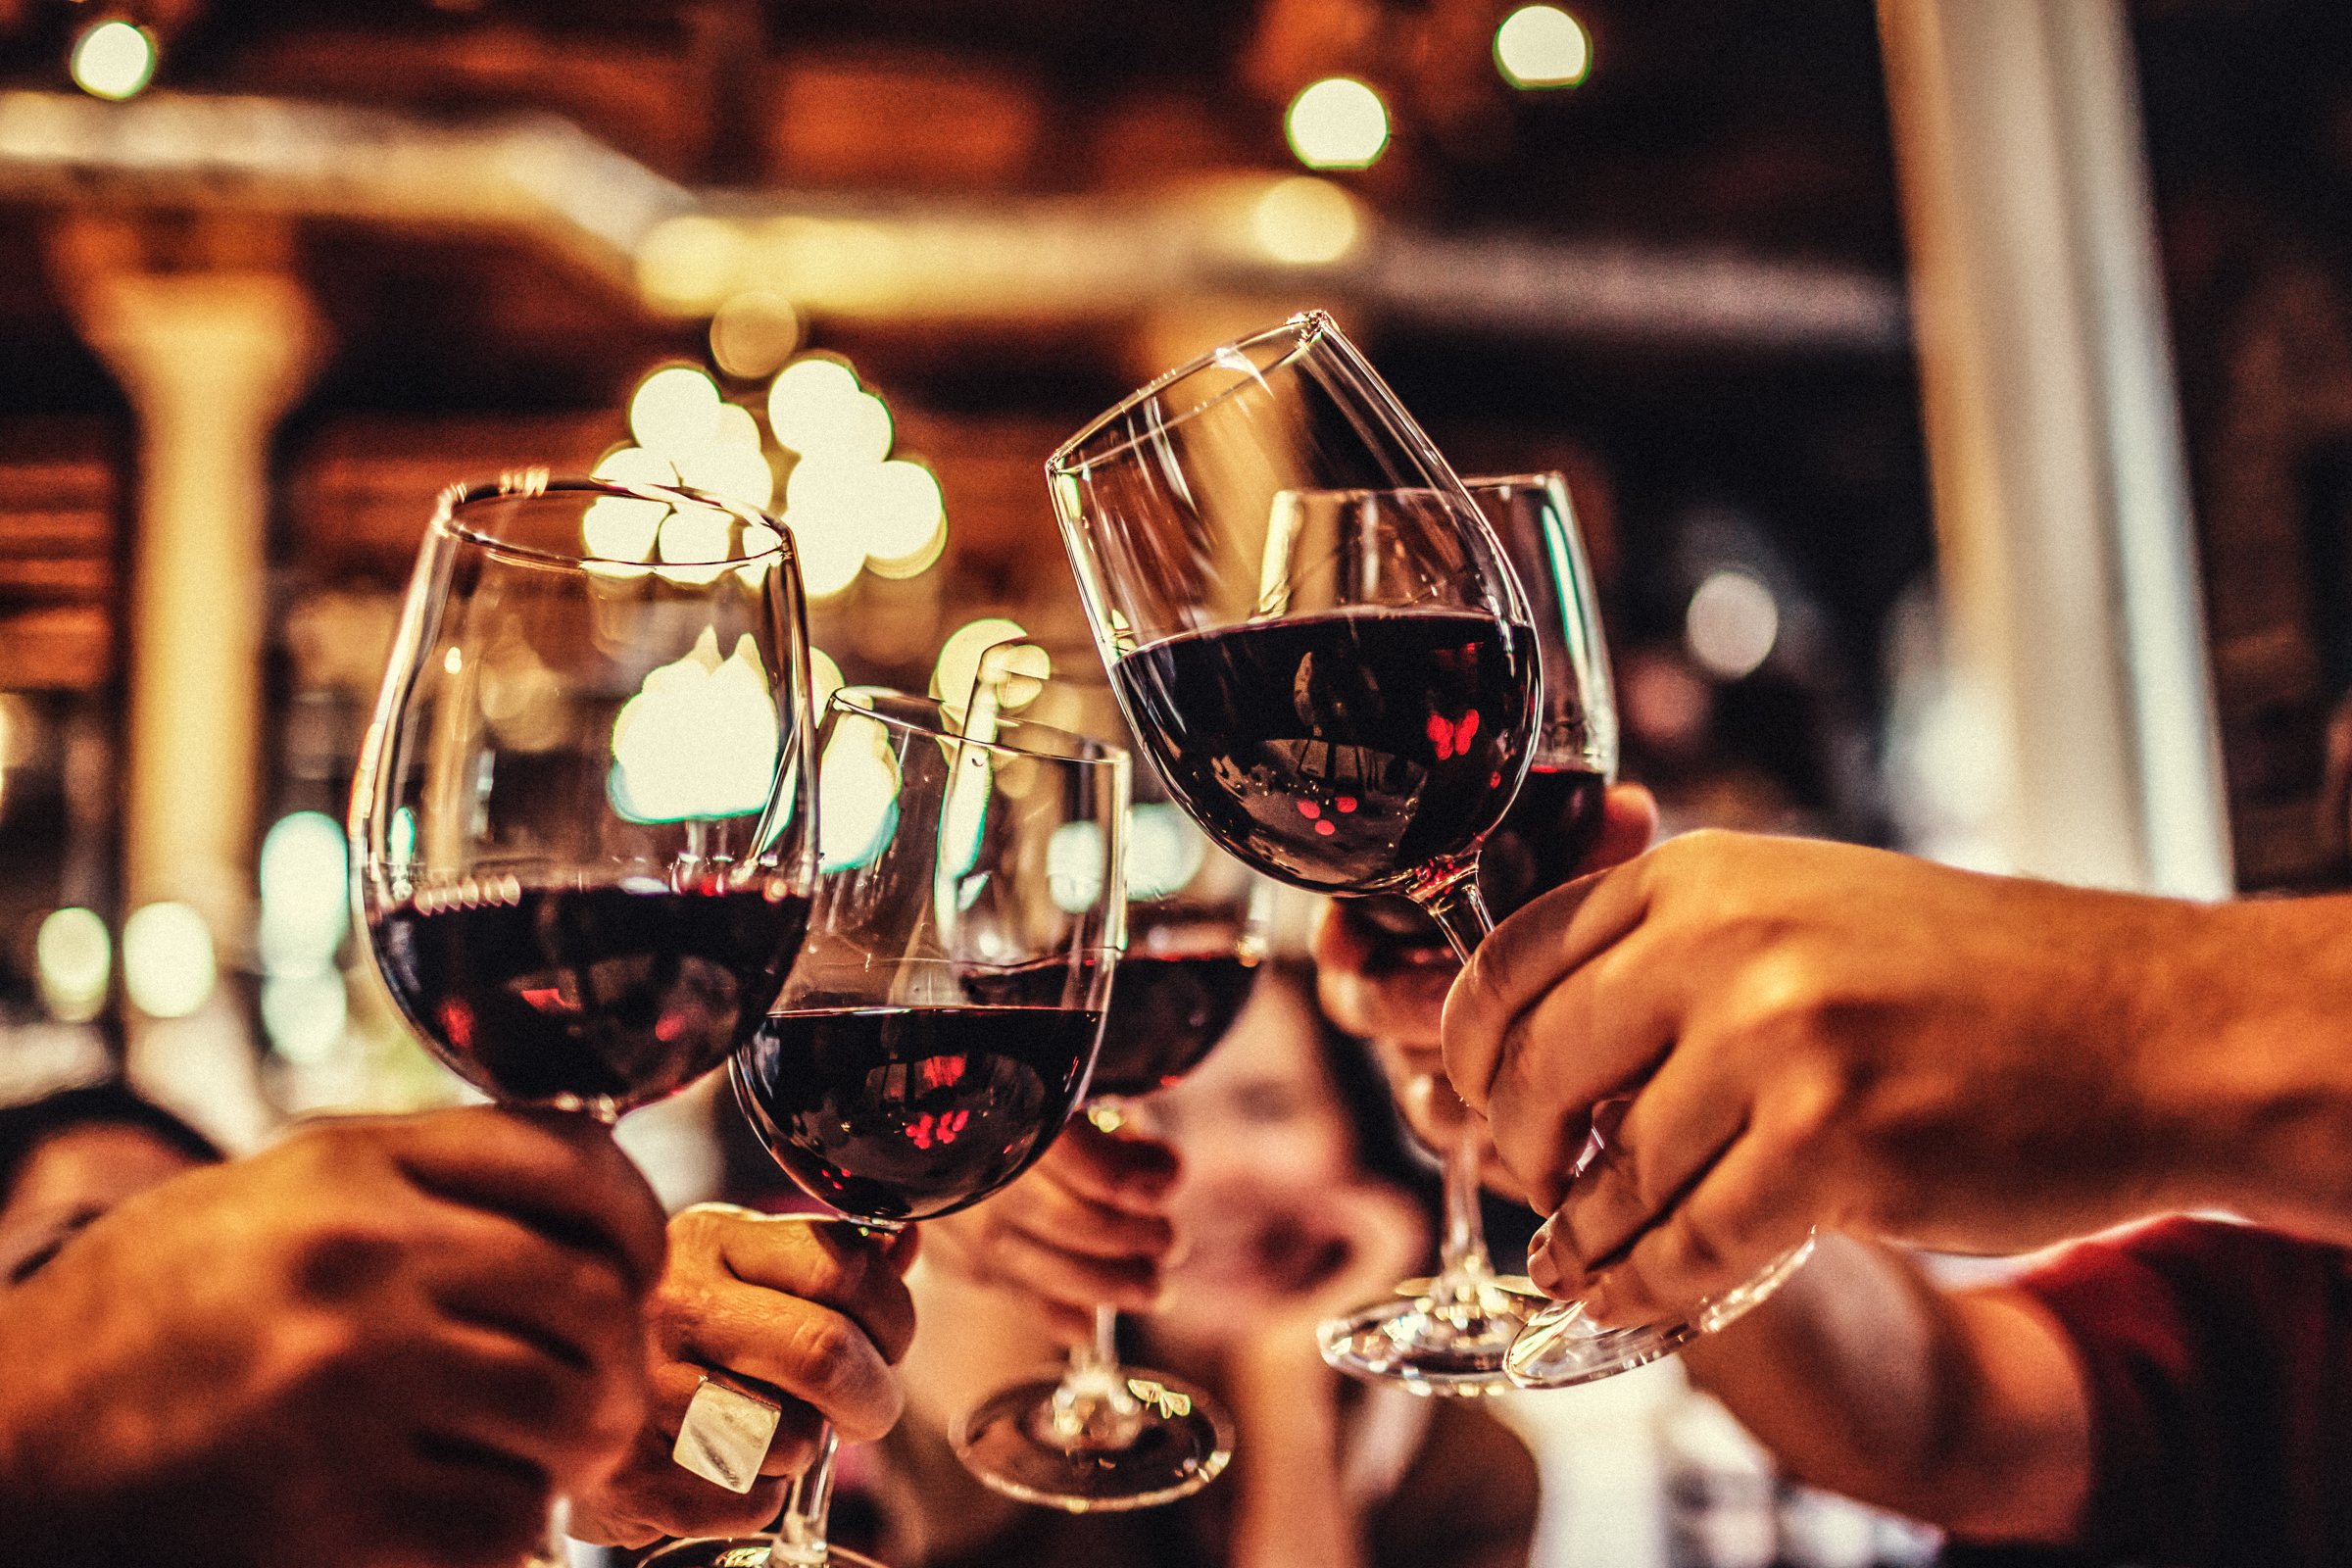 <p><strong>Червено вино</strong></p>

<p>Диетолози&nbsp;твърдят, че червеното вино в умерени количества, тоест&nbsp;до една порция на ден за жените и до две порции на ден за мъжете, се свързва с по-дълго живеещите хора и може да помогне за поддържане на по-добър вид на кожата. Но по-малките дози са много по-добри за здравето! Със сигурност прекаляването няма да ви помогне да запазите младежкия си вид.</p>